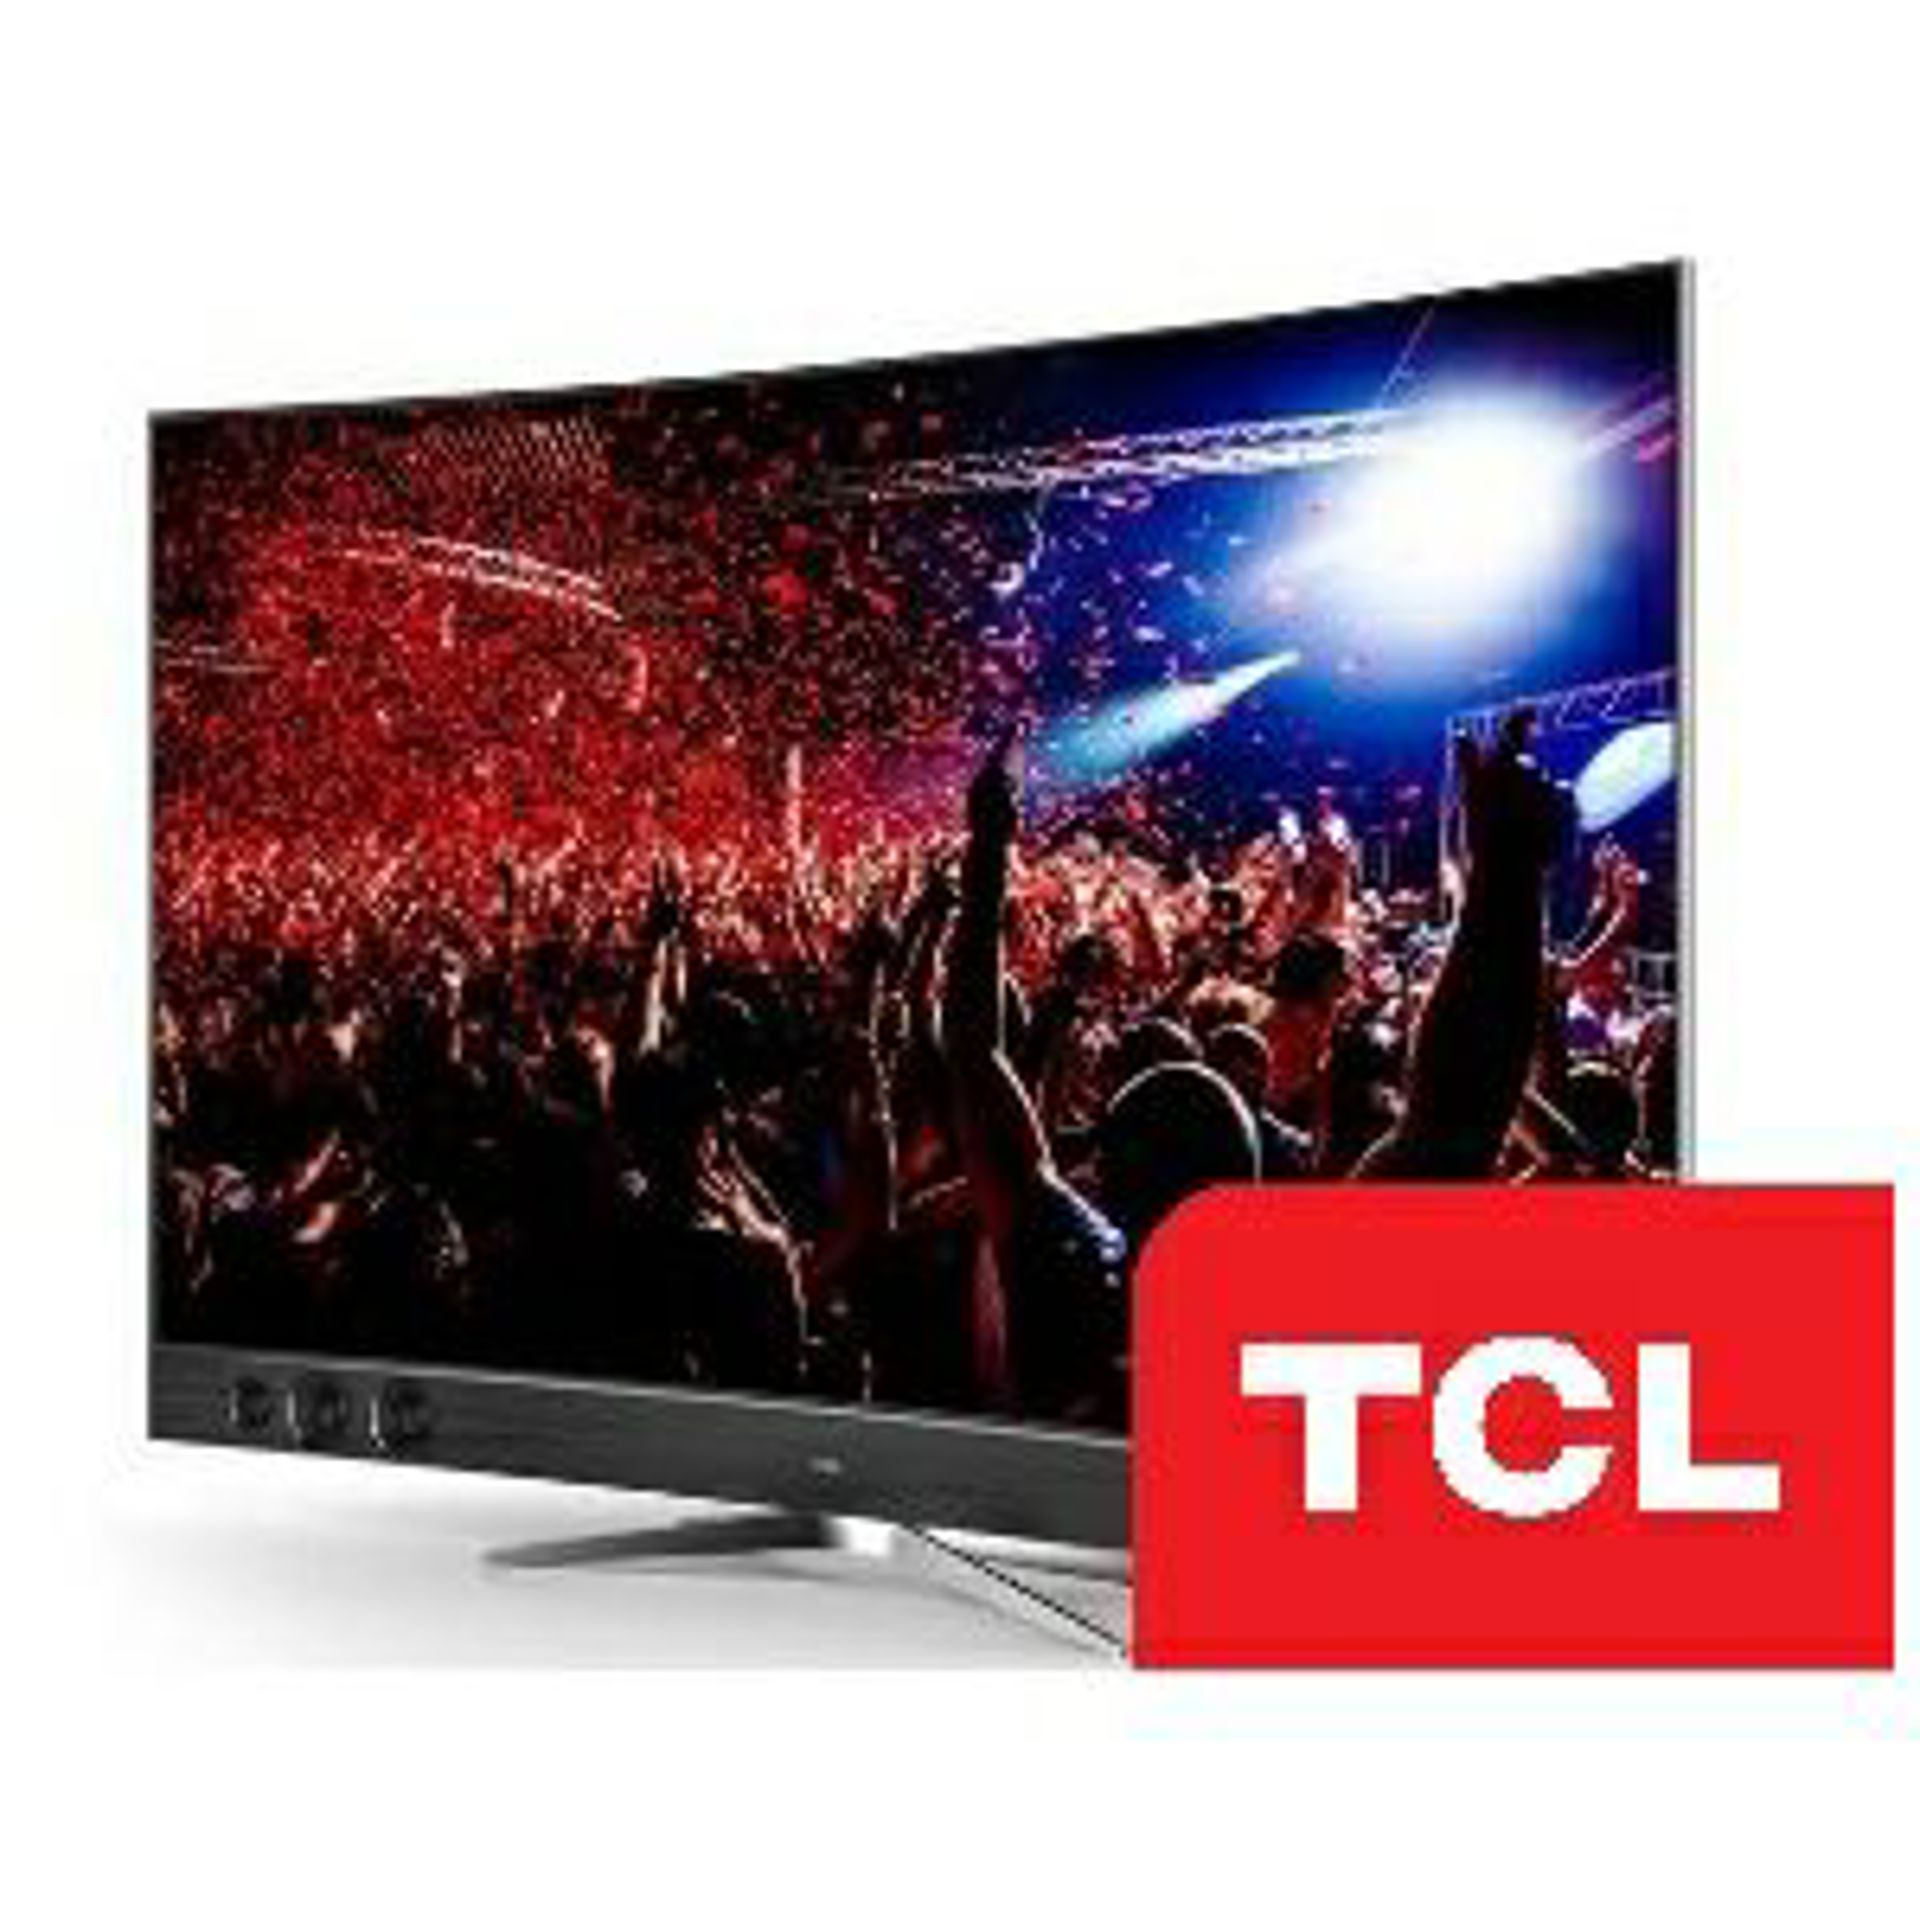 TCL televizori - novo na AllMall.hr